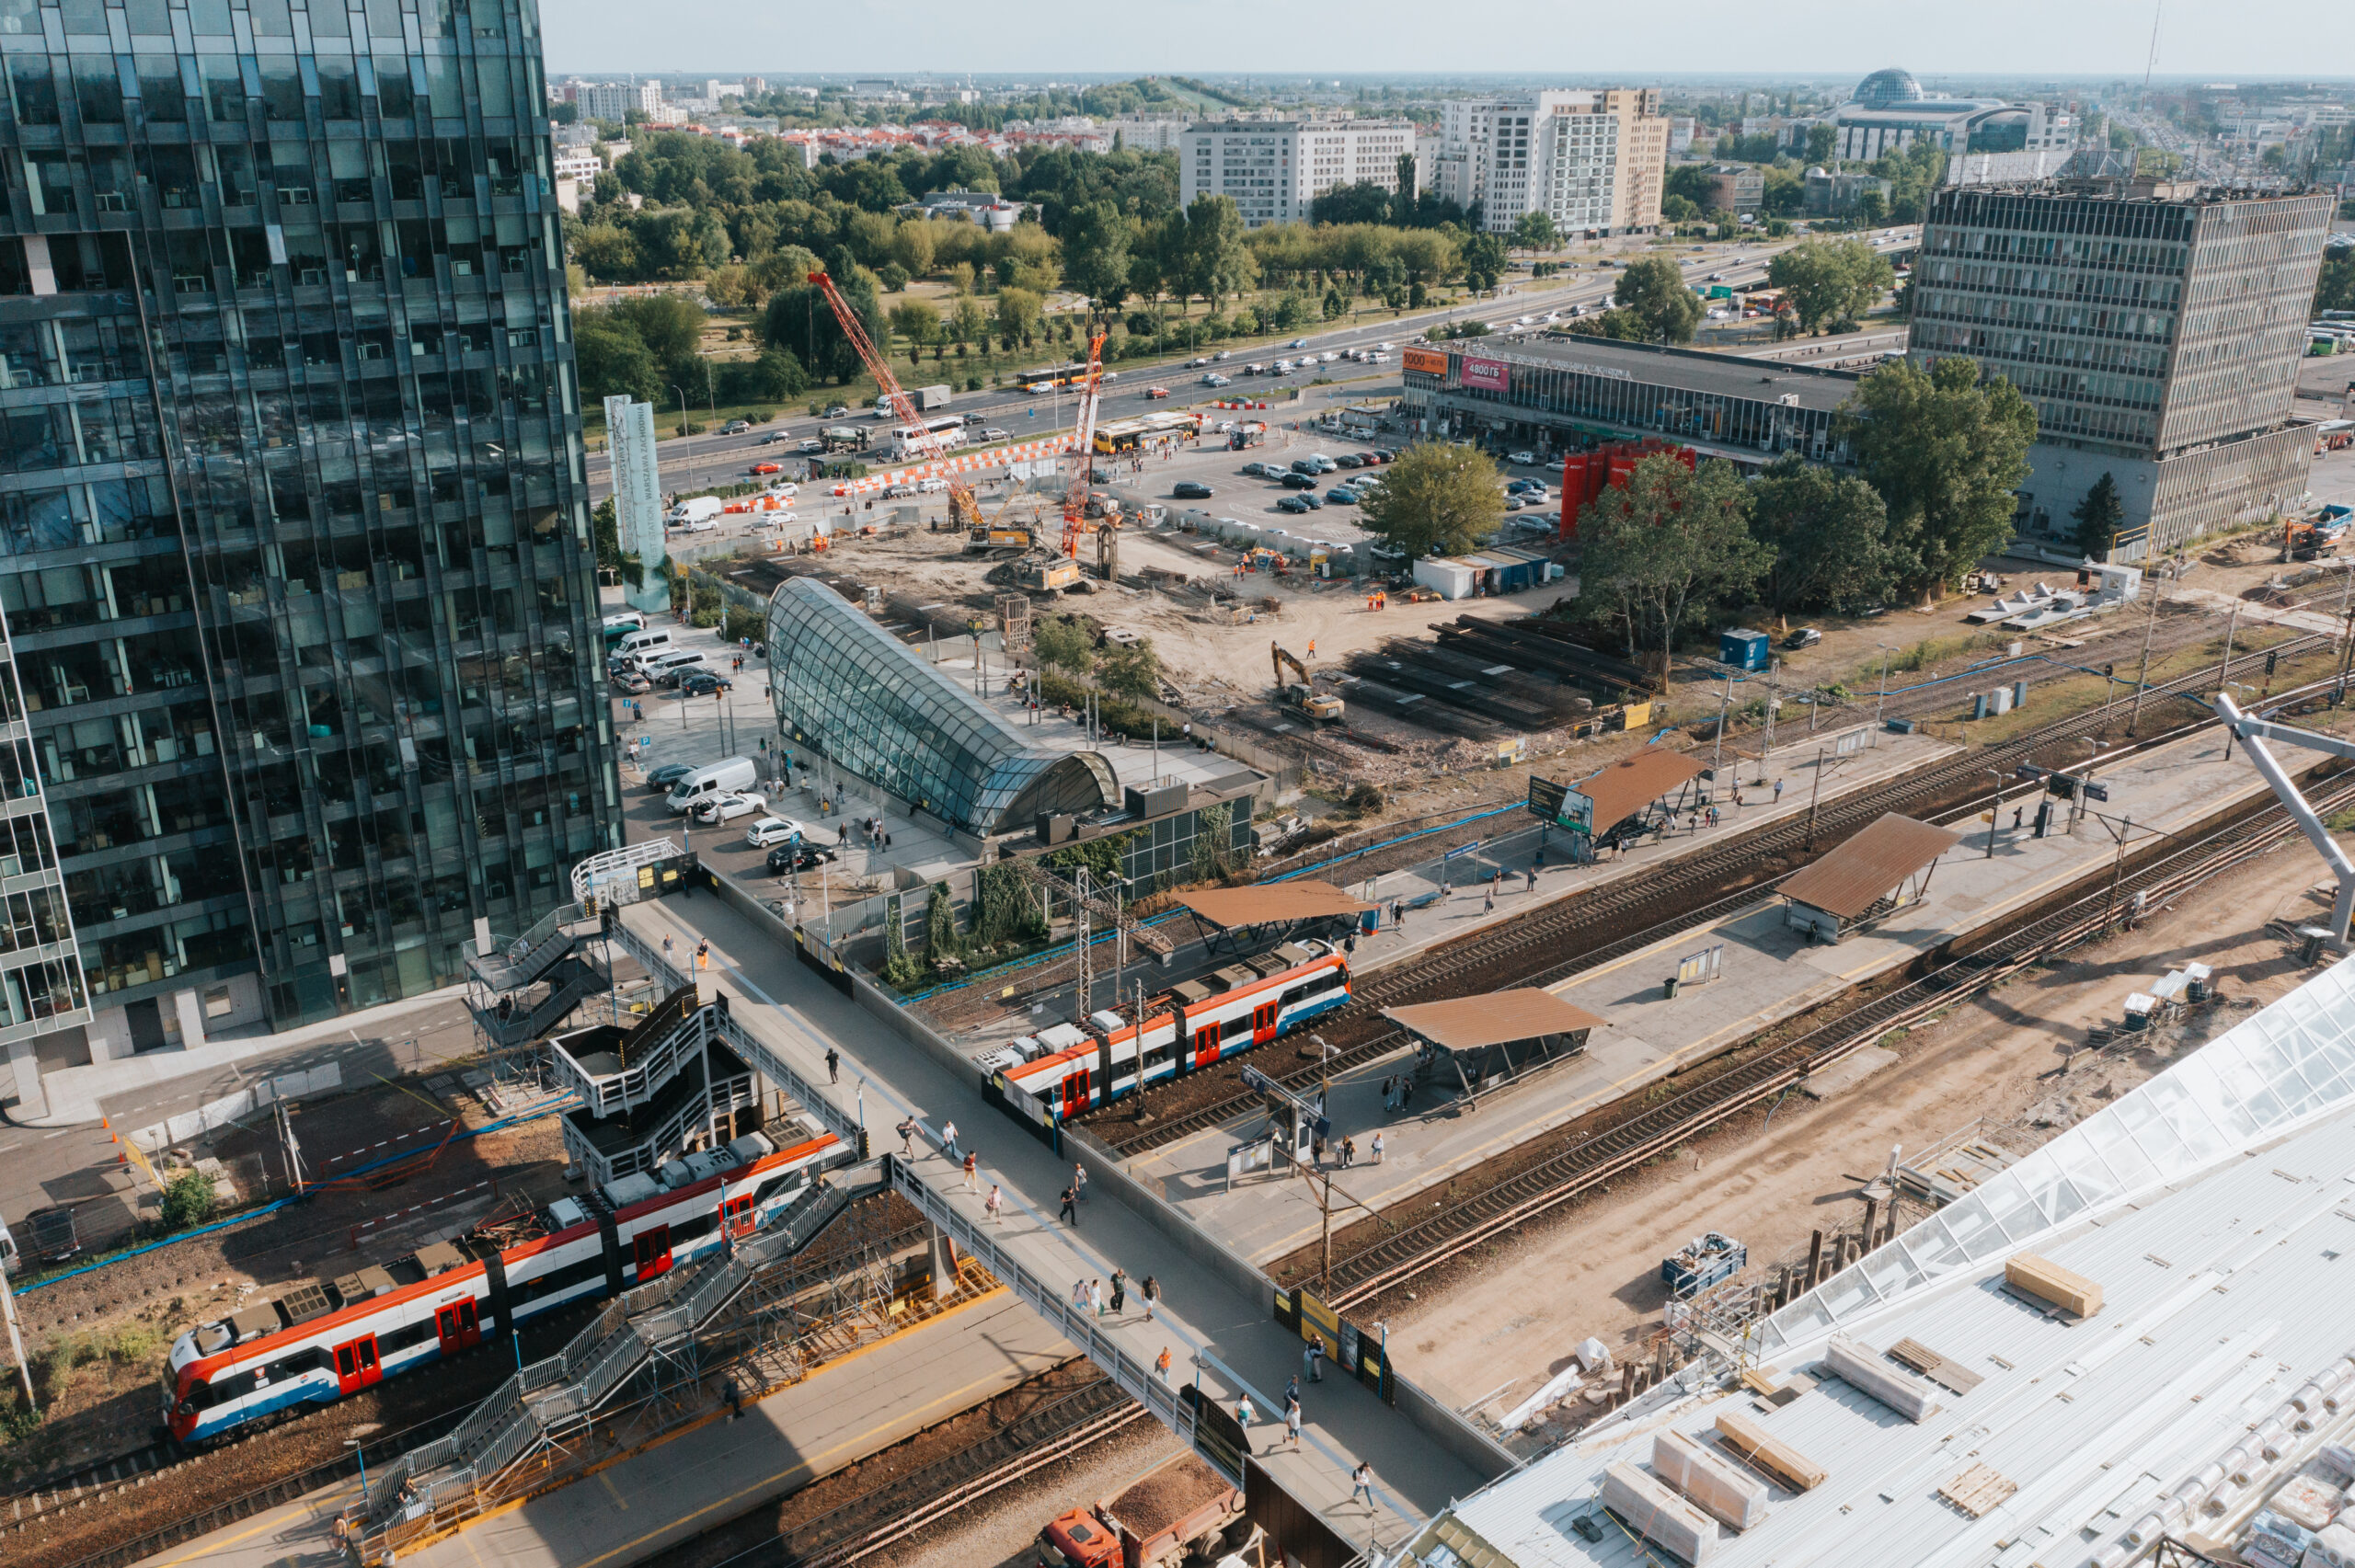 Vista del tramo 6 con los andenes 1 y 2 en servicio y obras en el tramo 7 - Reconstrucción de la estación oeste de Varsovia